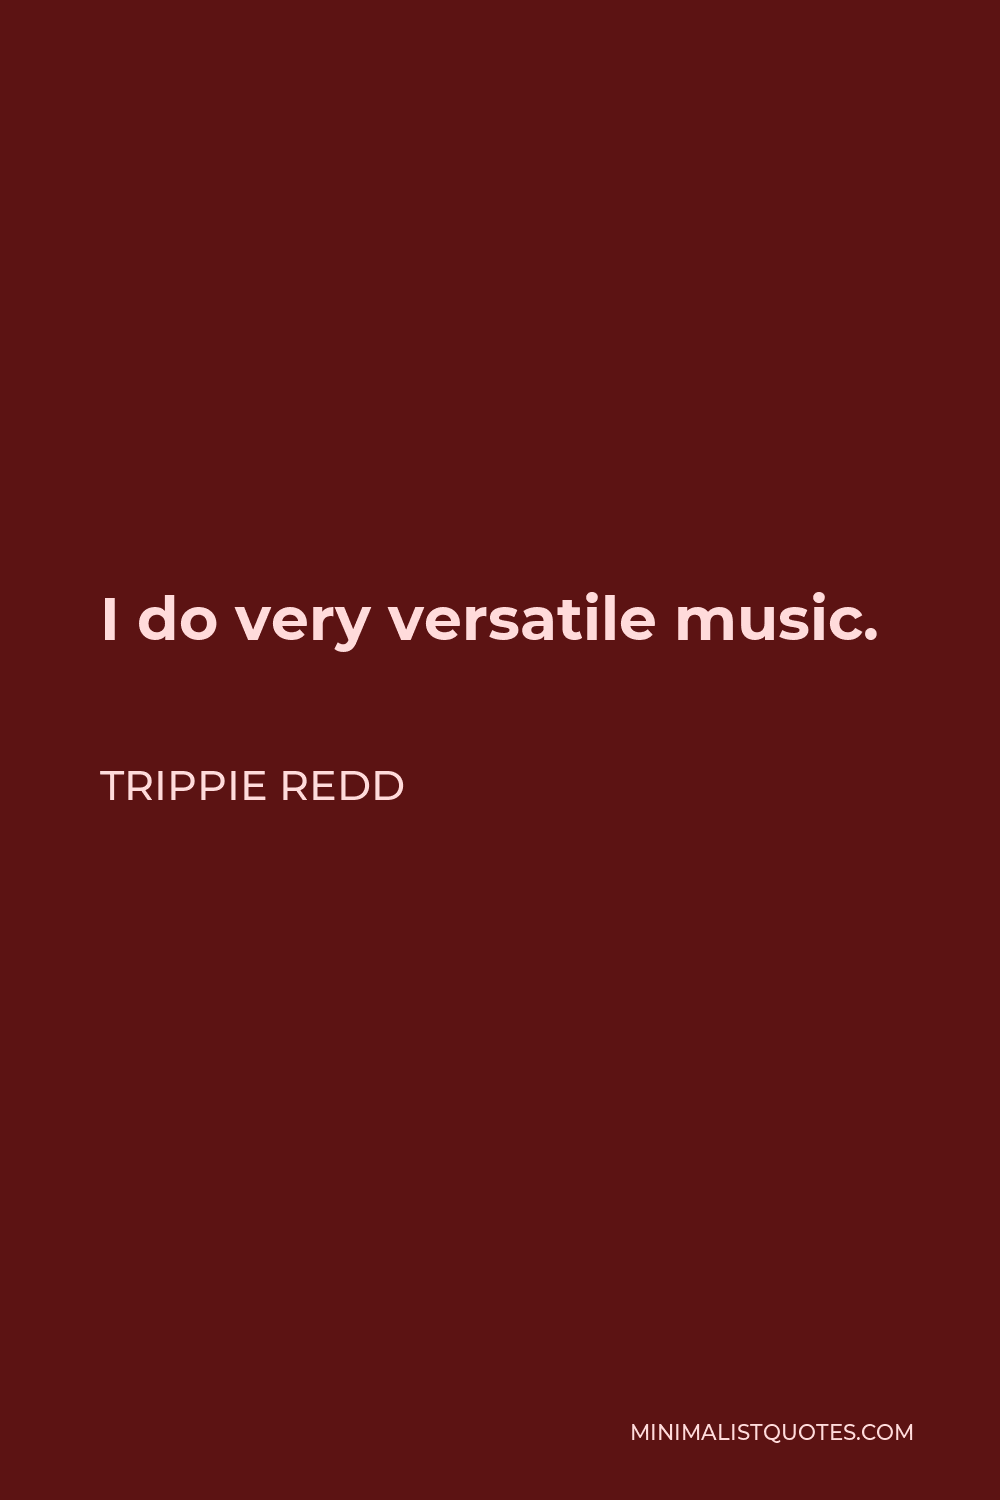 Trippie Redd Quote - I do very versatile music.